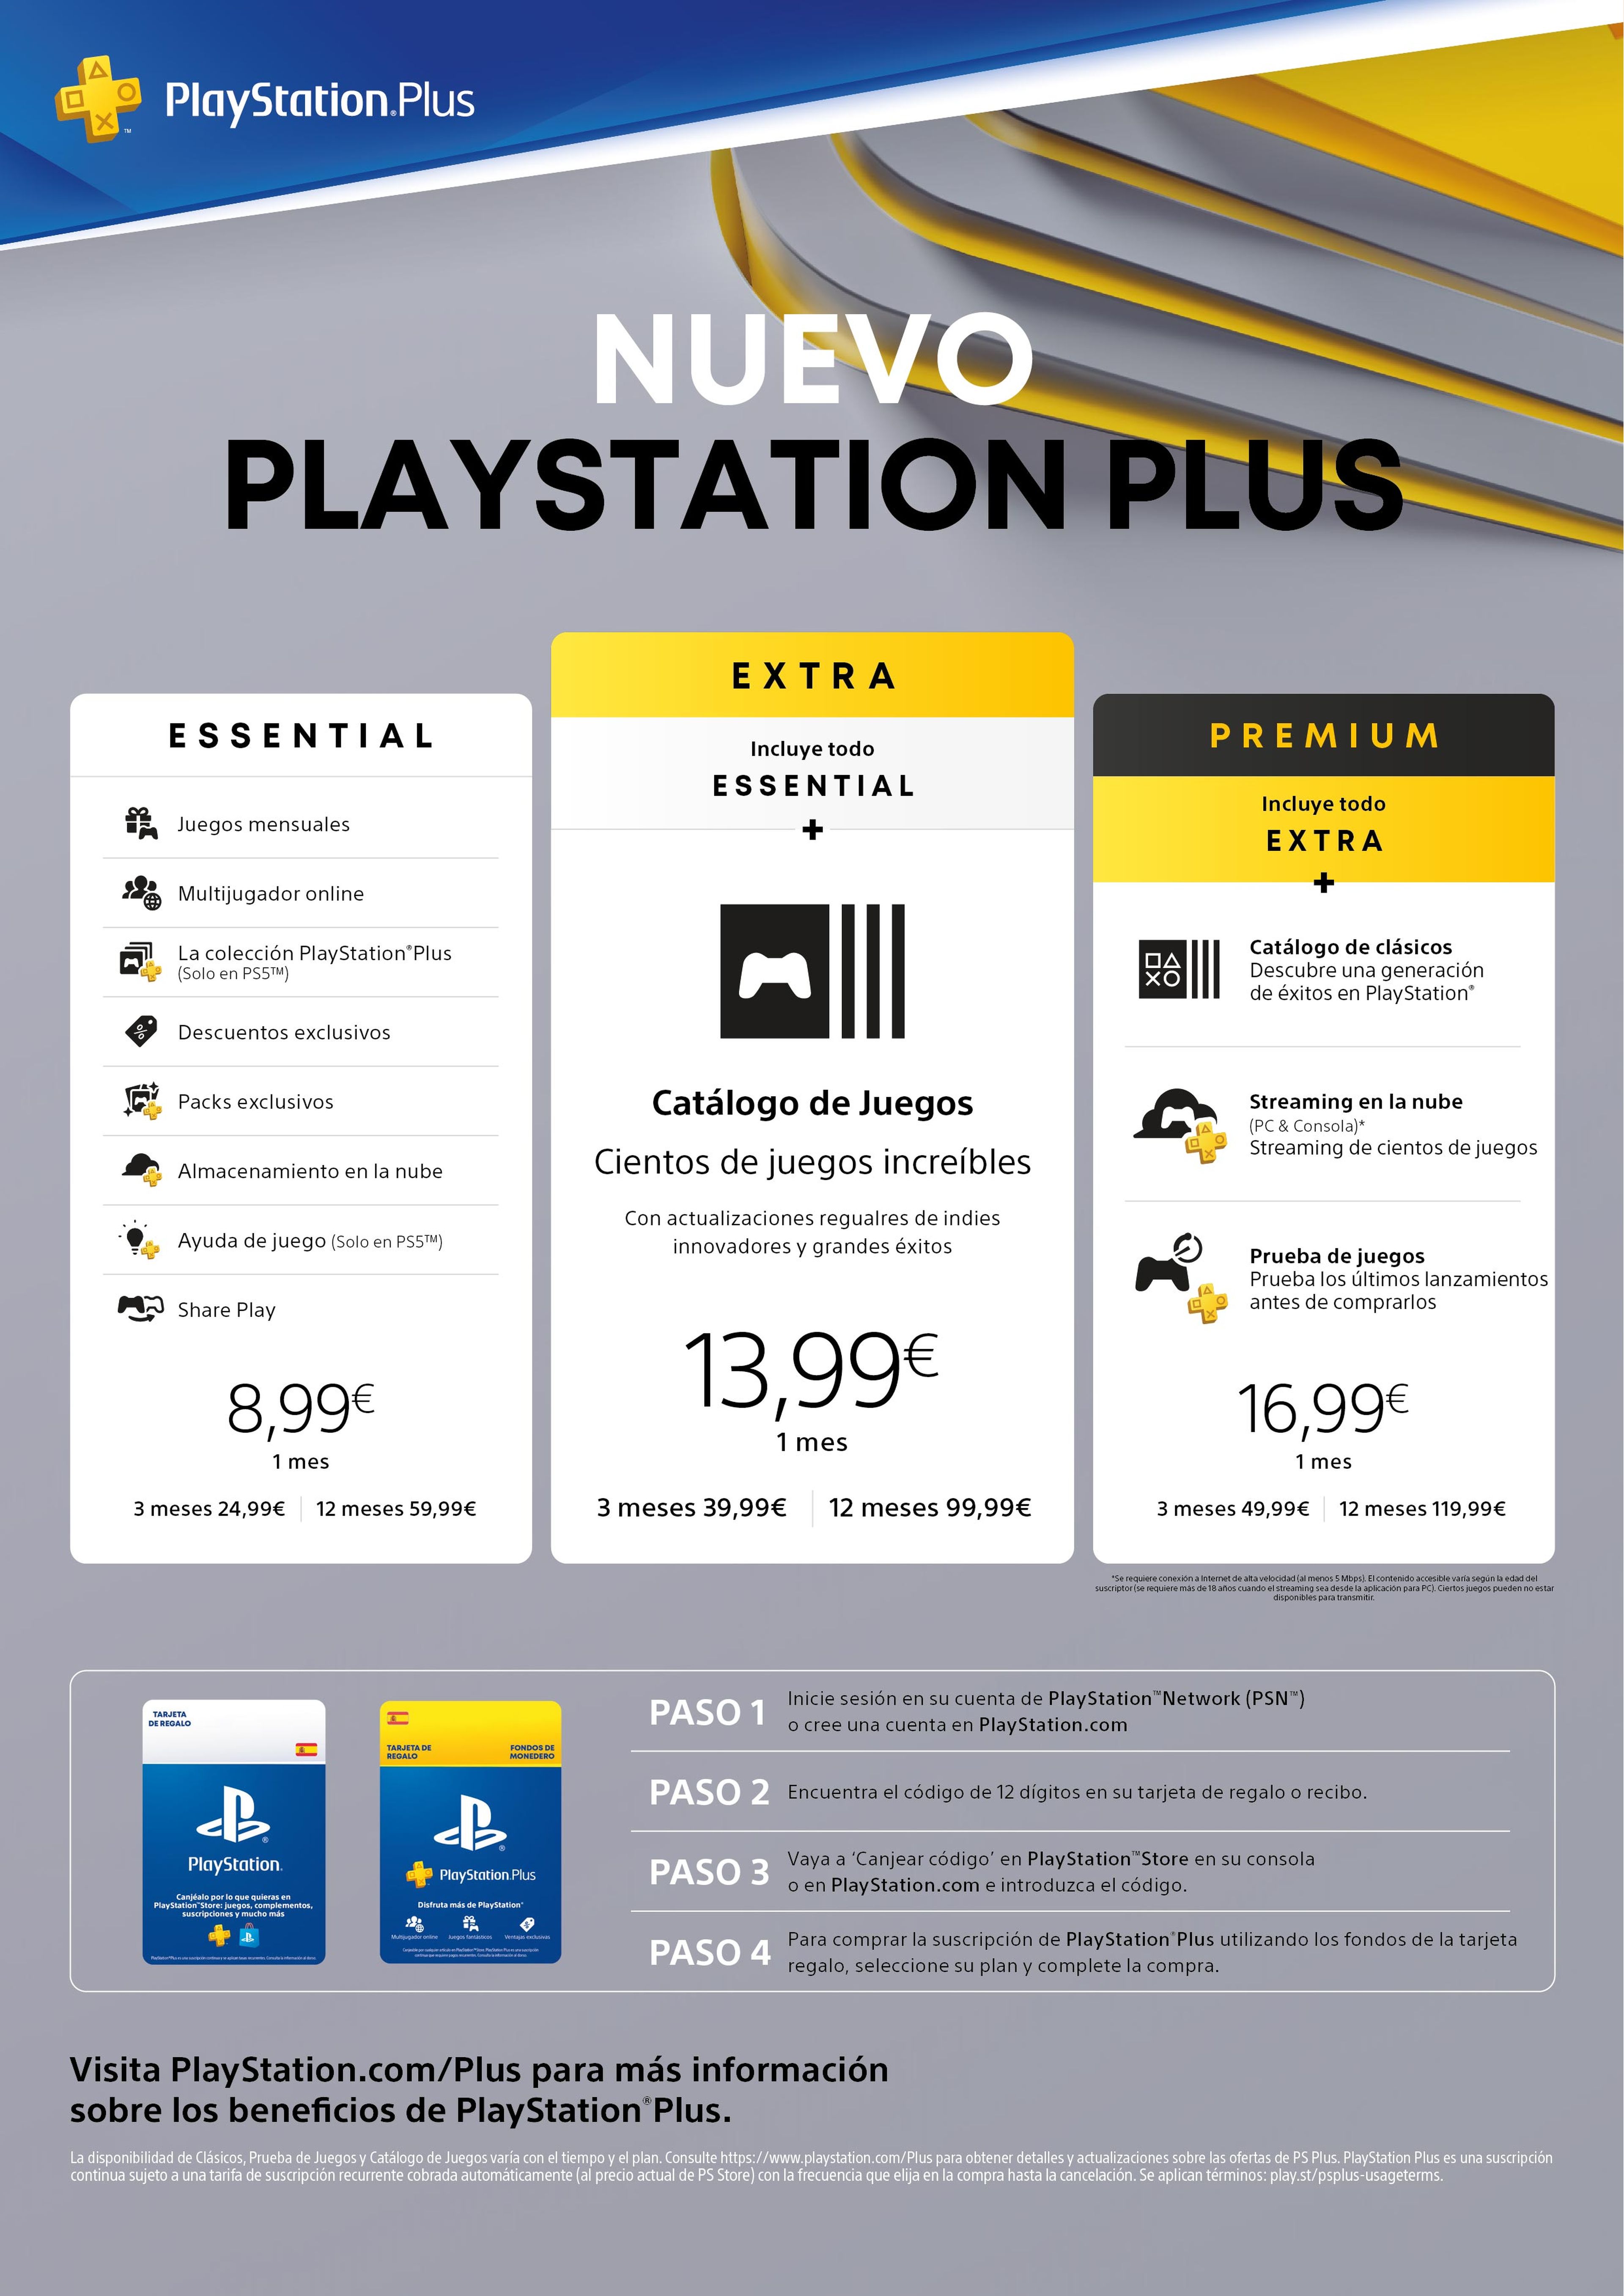 PlayStation Plus: qué es y cómo funciona, mejores juegos y